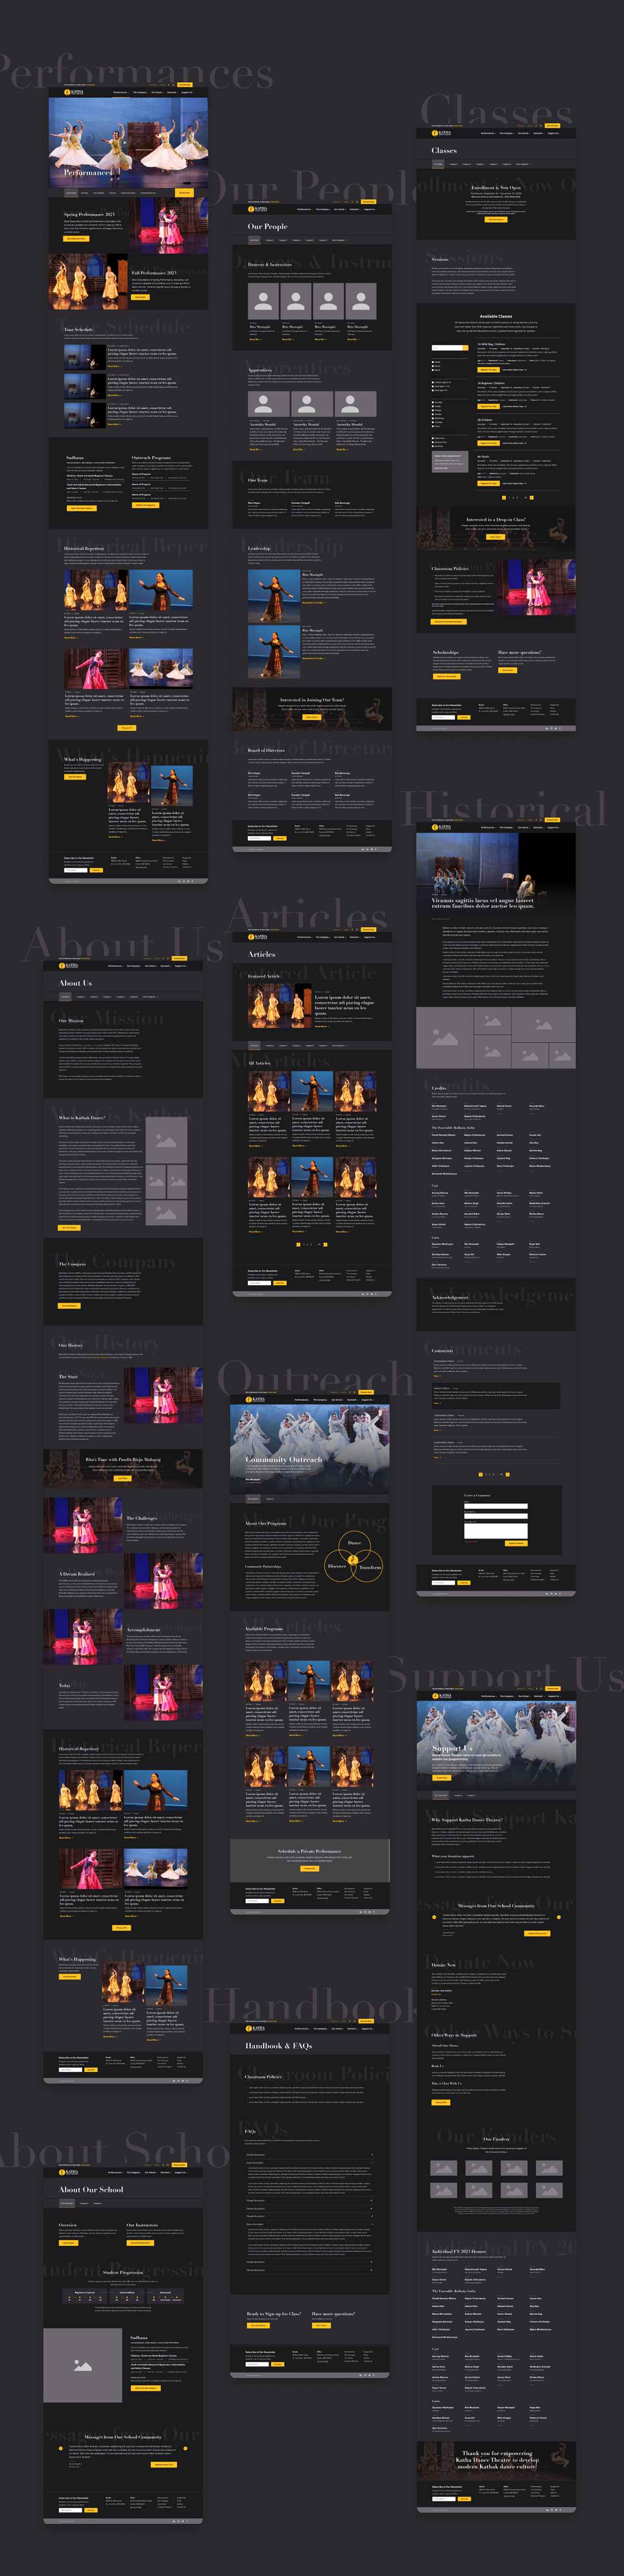 design Website Design dance website redesign Website wordpress theatre website